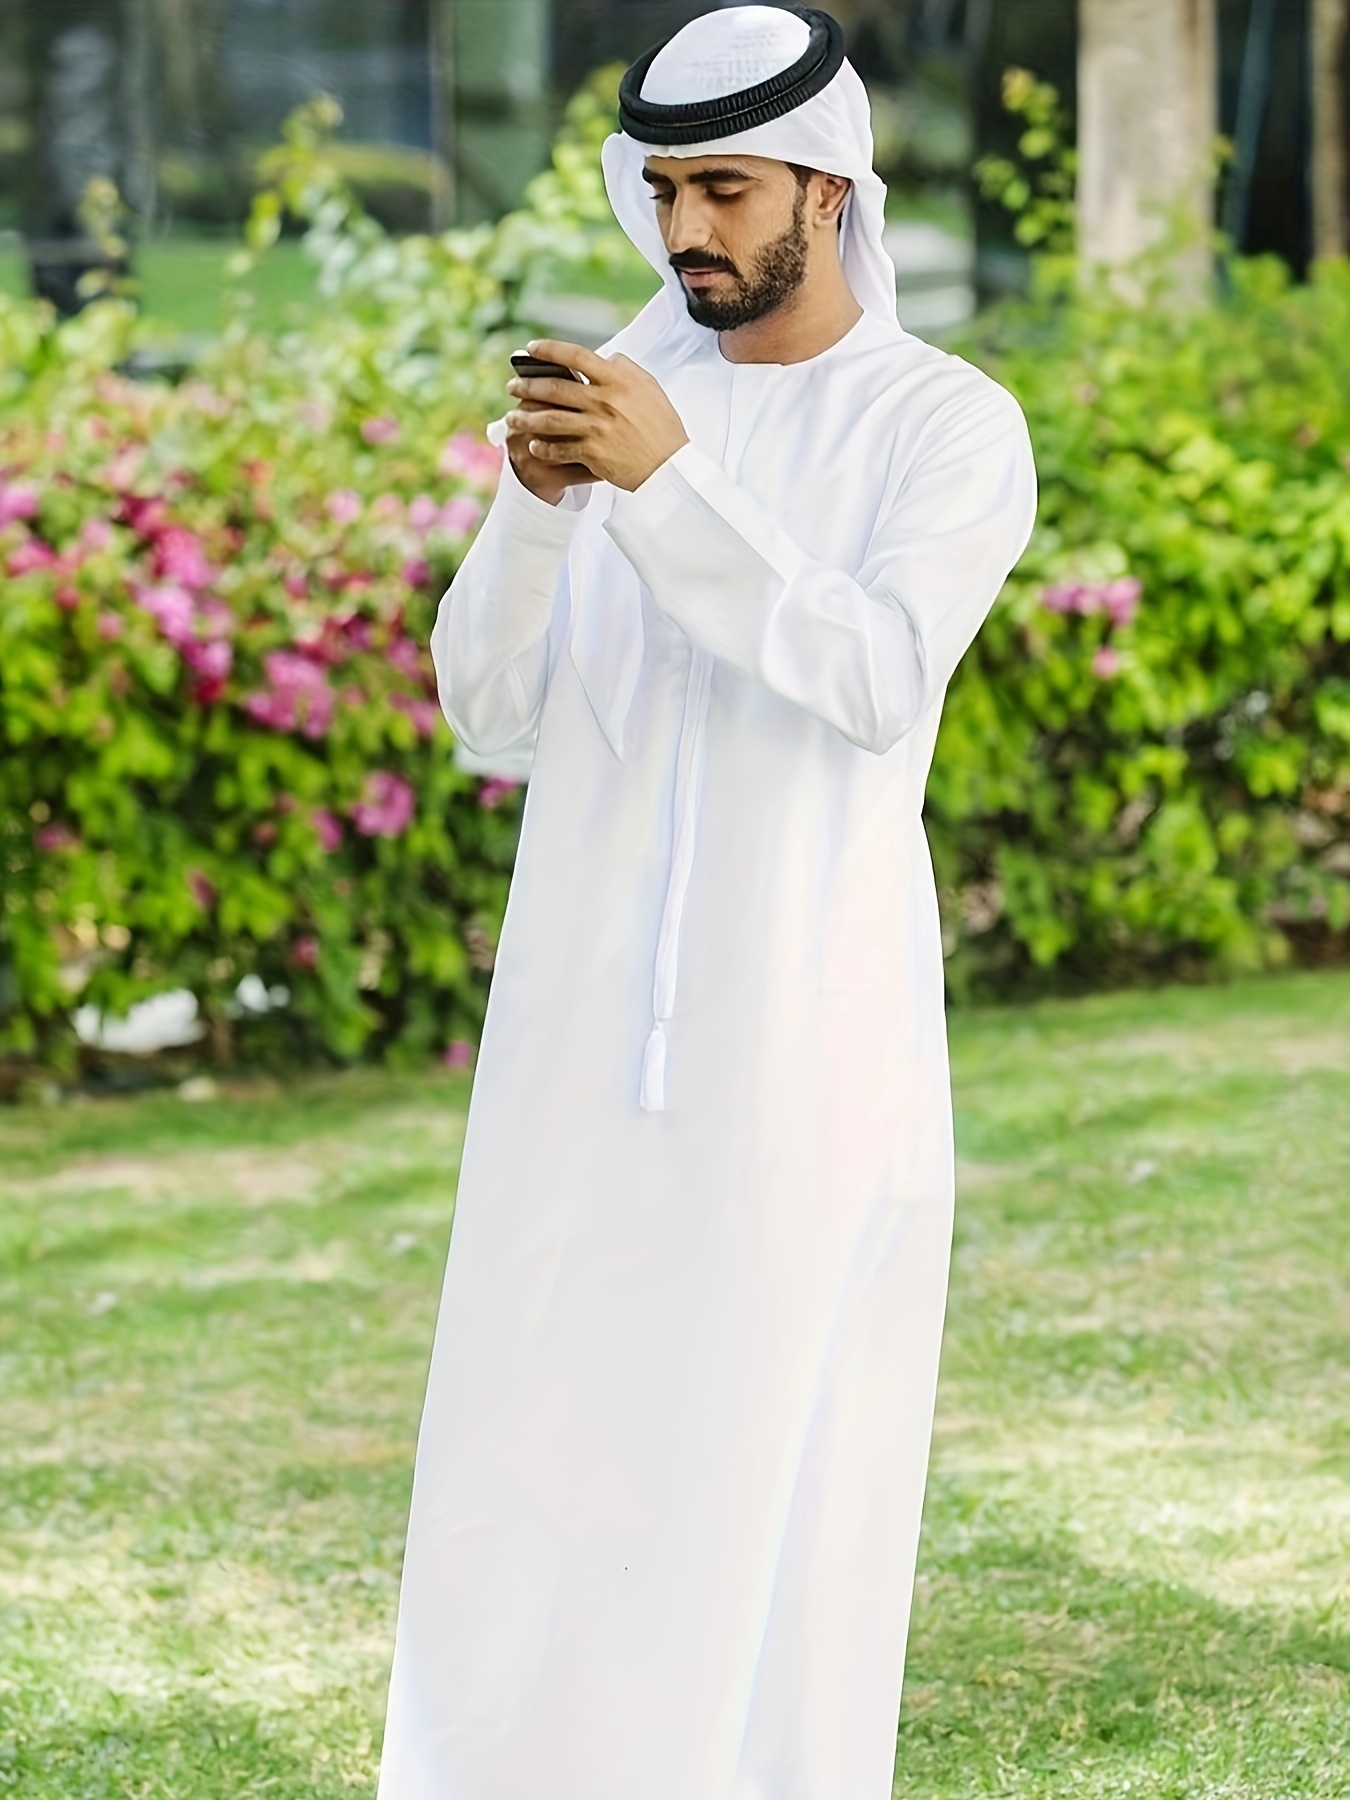 Men Thobe Robe Muslim Abaya Islamic Clothing Dishdasha Ramadan Clothes New